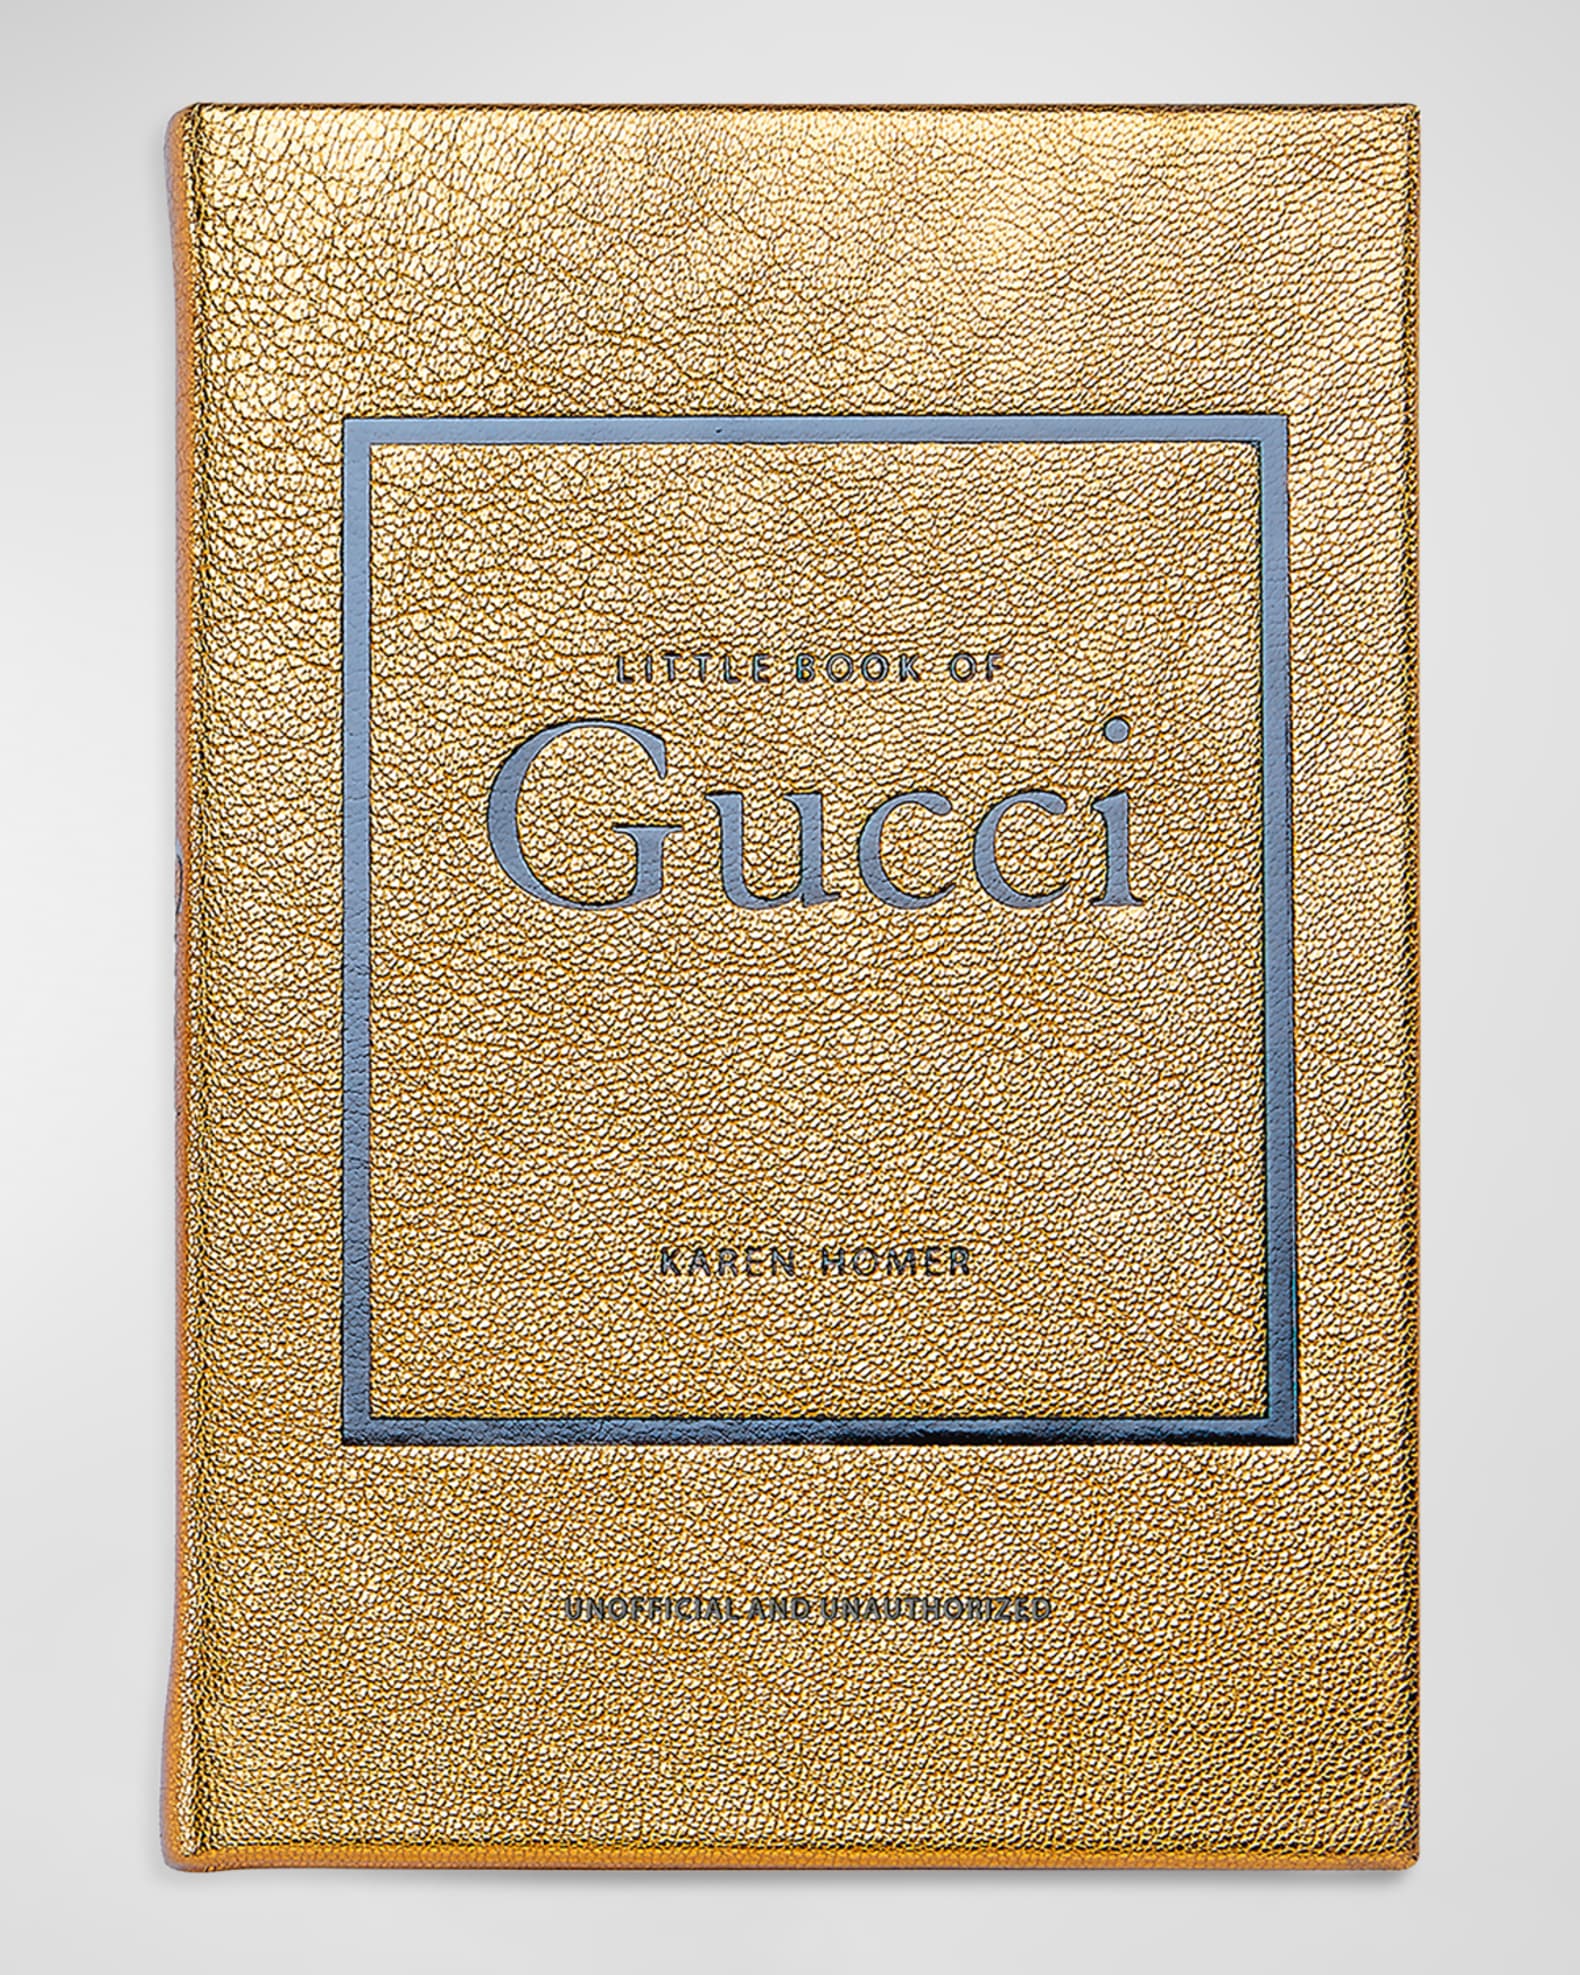 Gucci Hd, guccio Gucci, gucci Logo, armani, logo Svg, gucci, Chanel,  brands, Perfume, Fashion